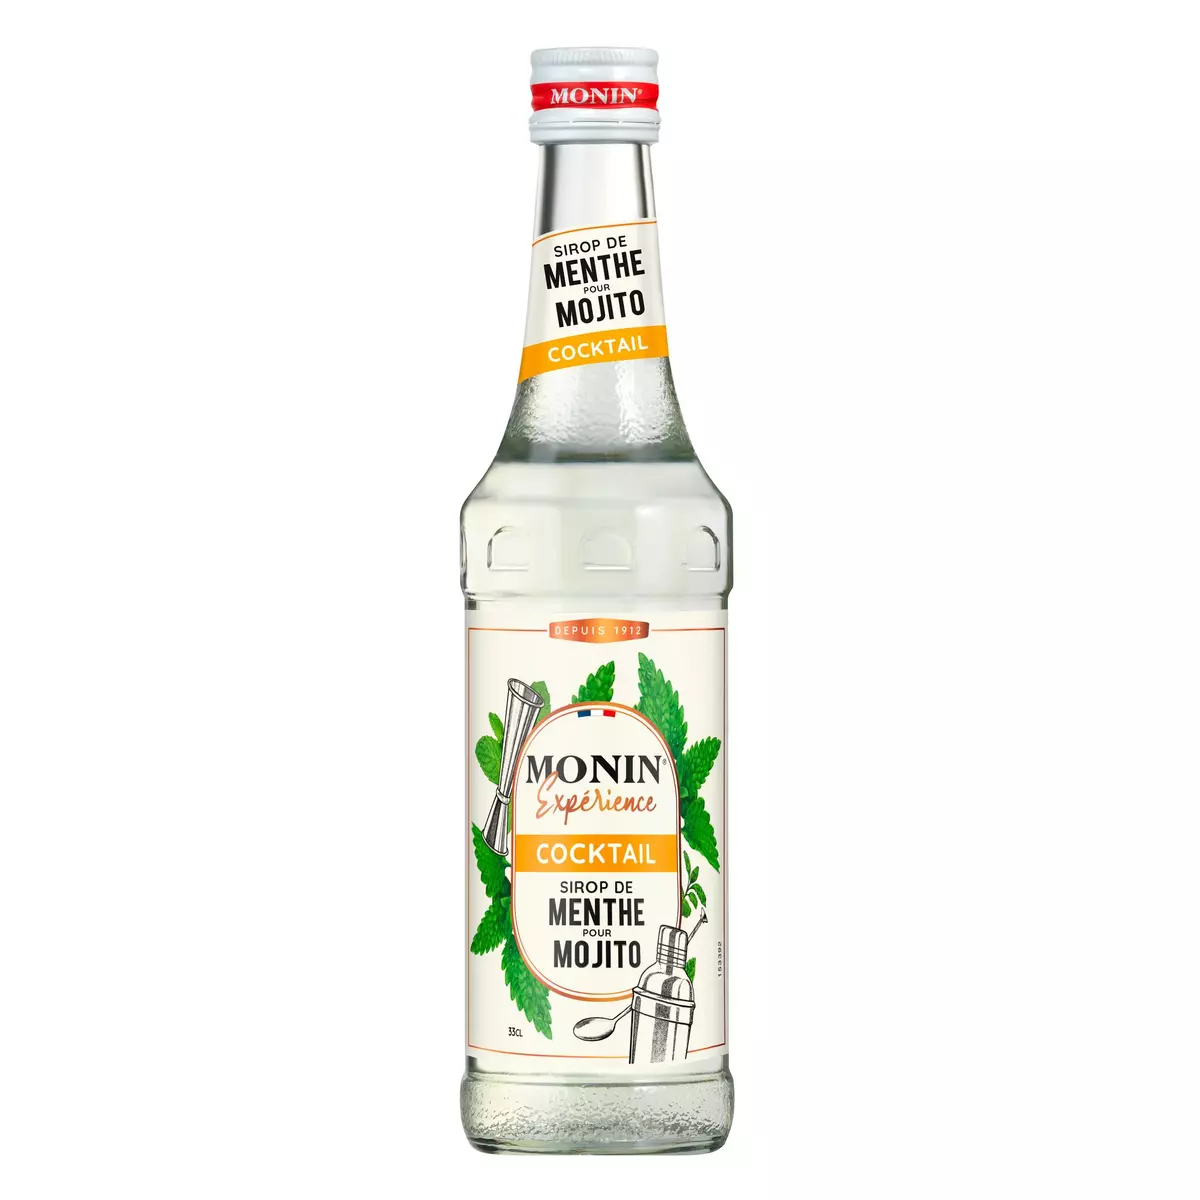 MONIN Sirop saveur mojito mint sans alcool pour cocktails 33cl